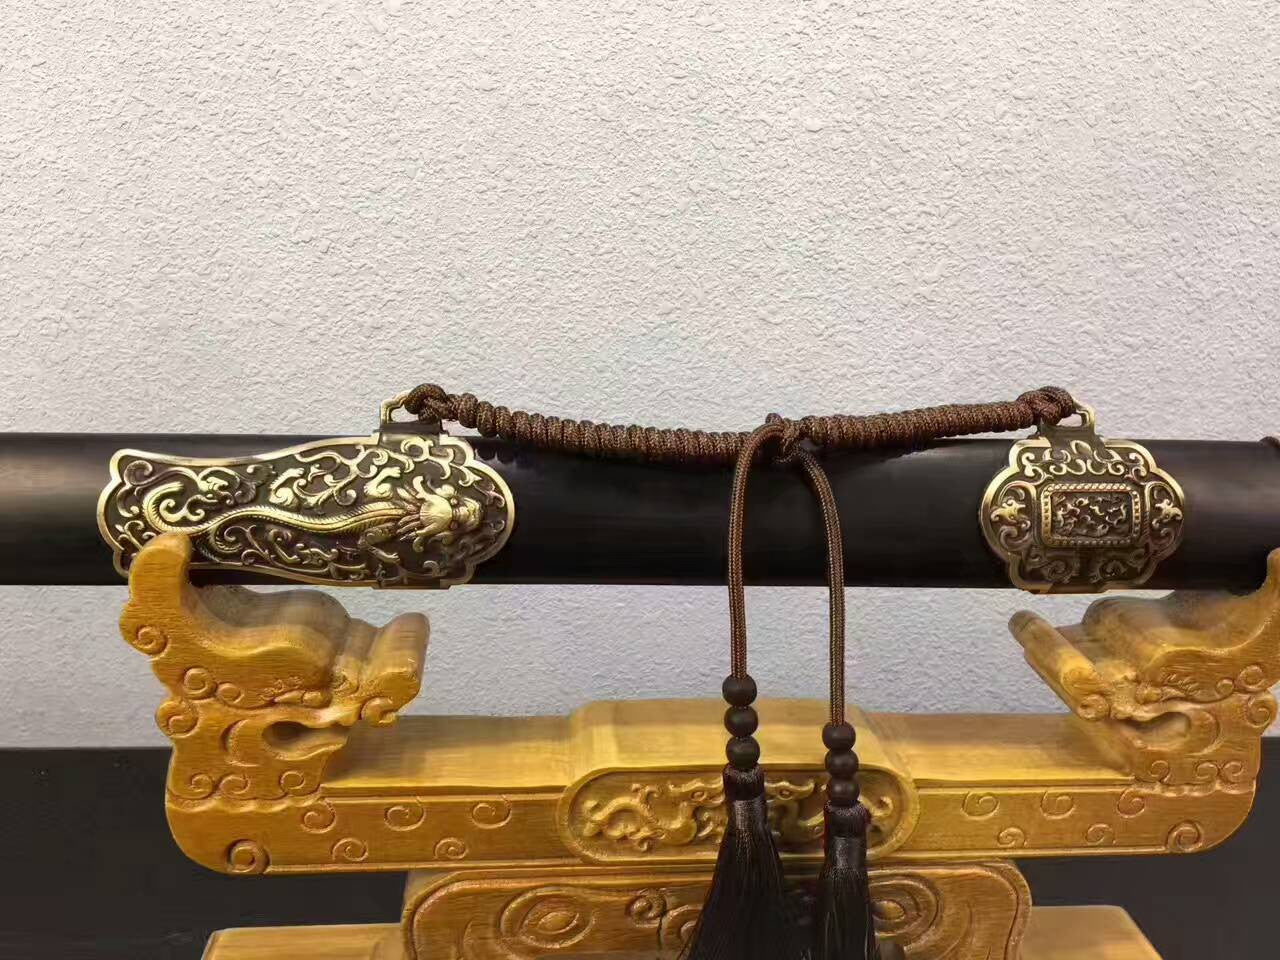 Qianlong sword,Folding pattern steel blade,Ebony Scabbard,Brass fittings - Chinese sword shop